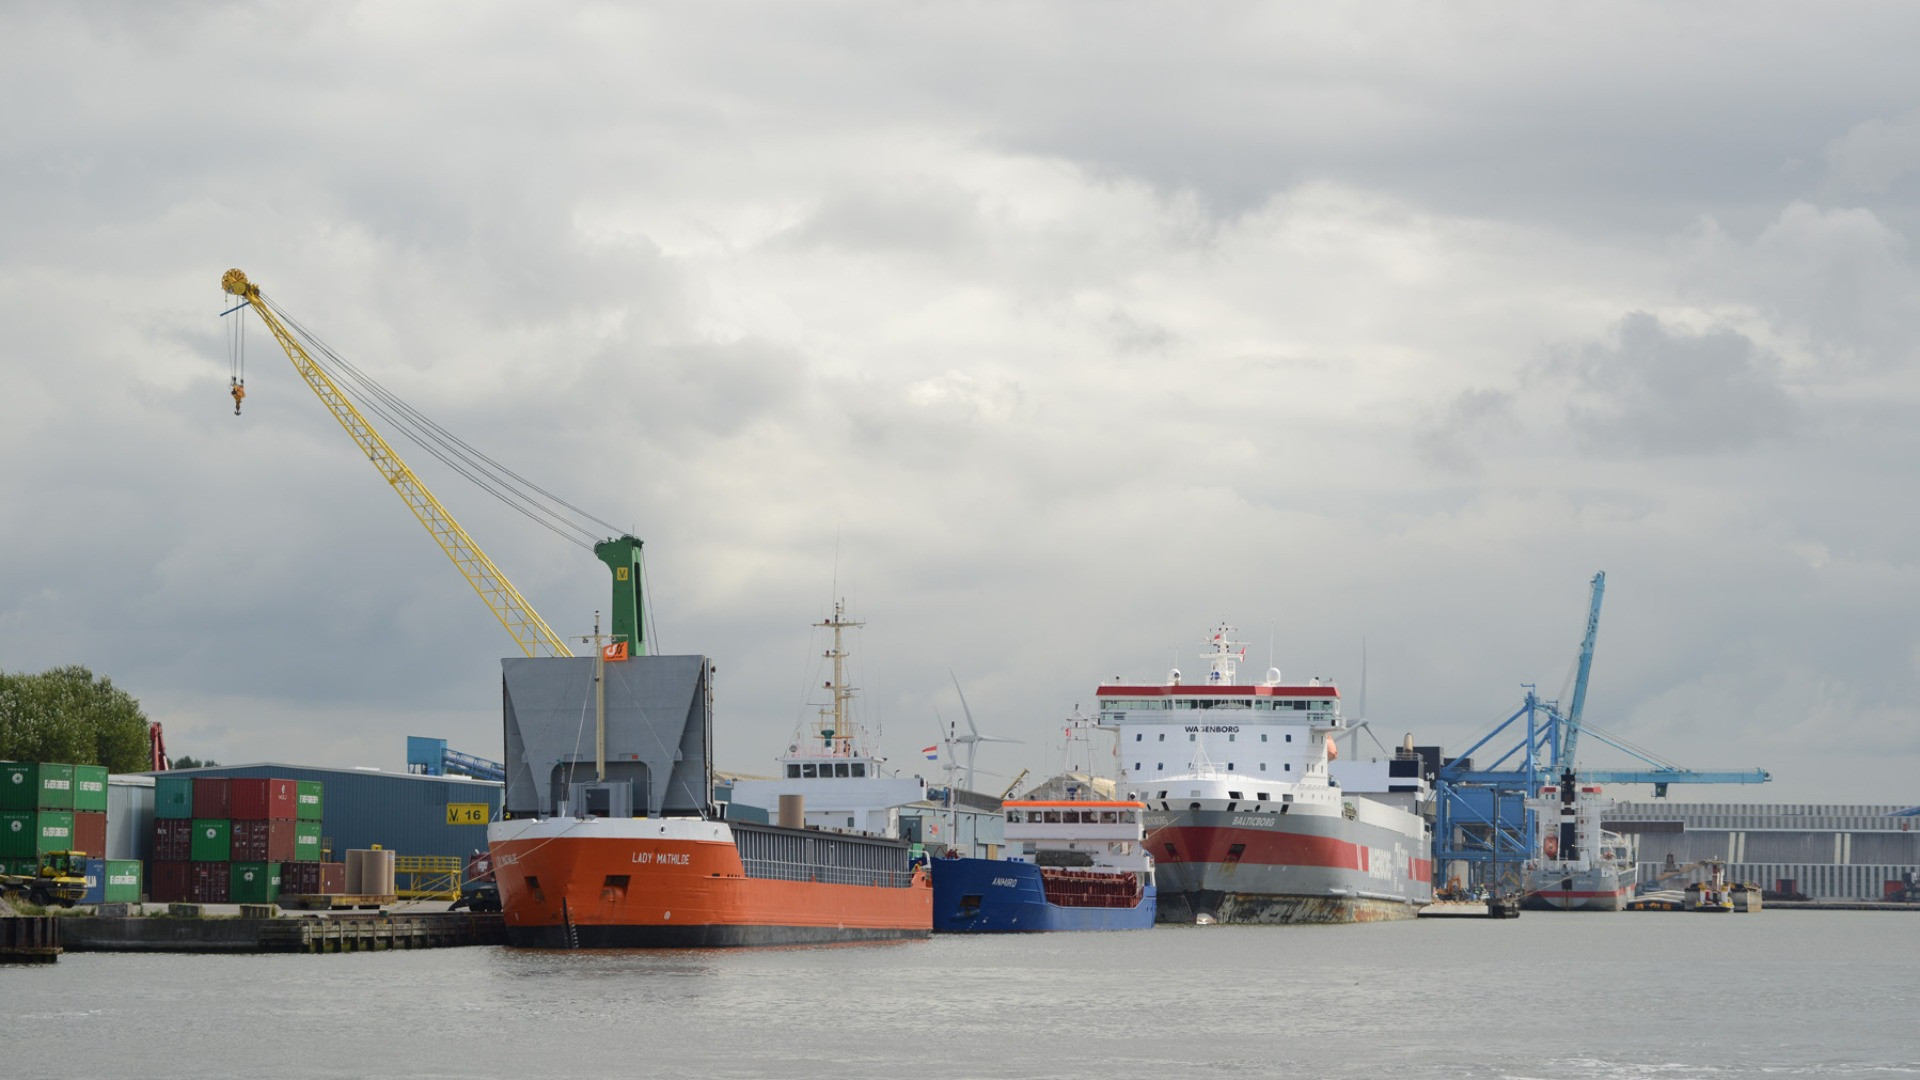 scheepvaart-kanaal-verbrugge-logistiek-wagenborg--(39)